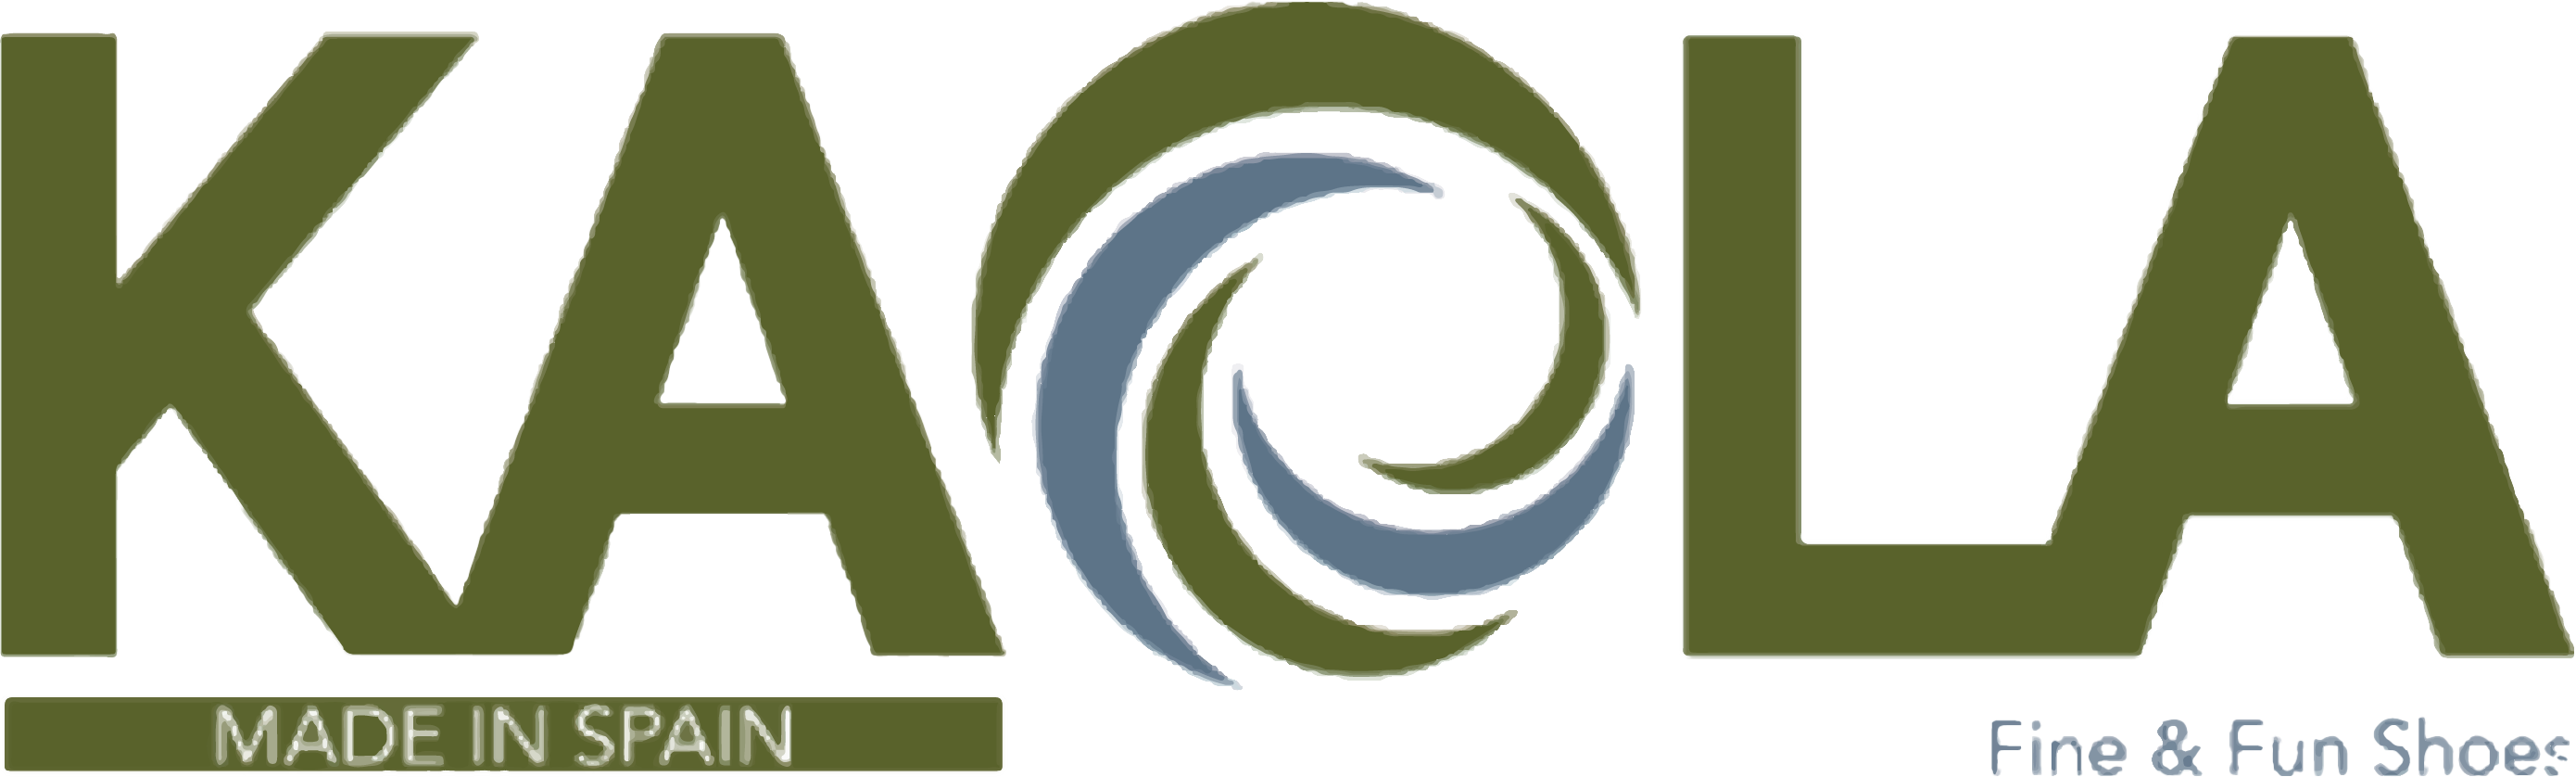 kaola logo